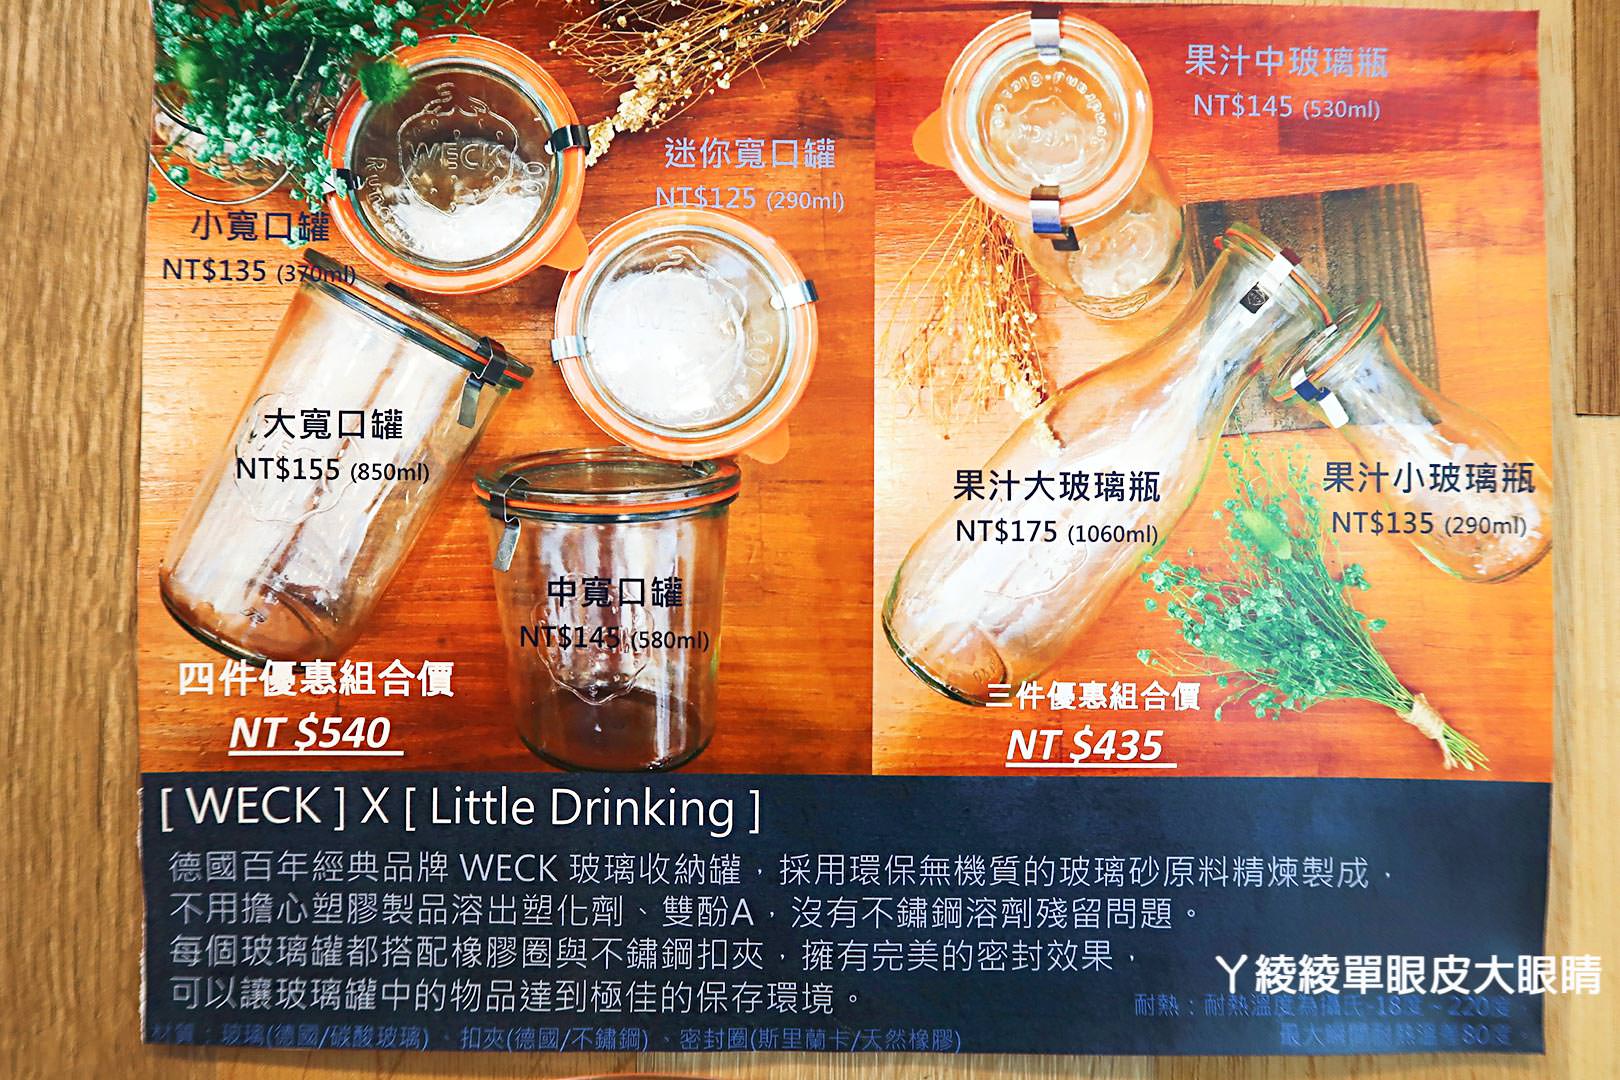 苗栗頭份飲料店推薦《小飲品Little Drinking》，冷天氣就是要喝暖呼呼的冬季飲品